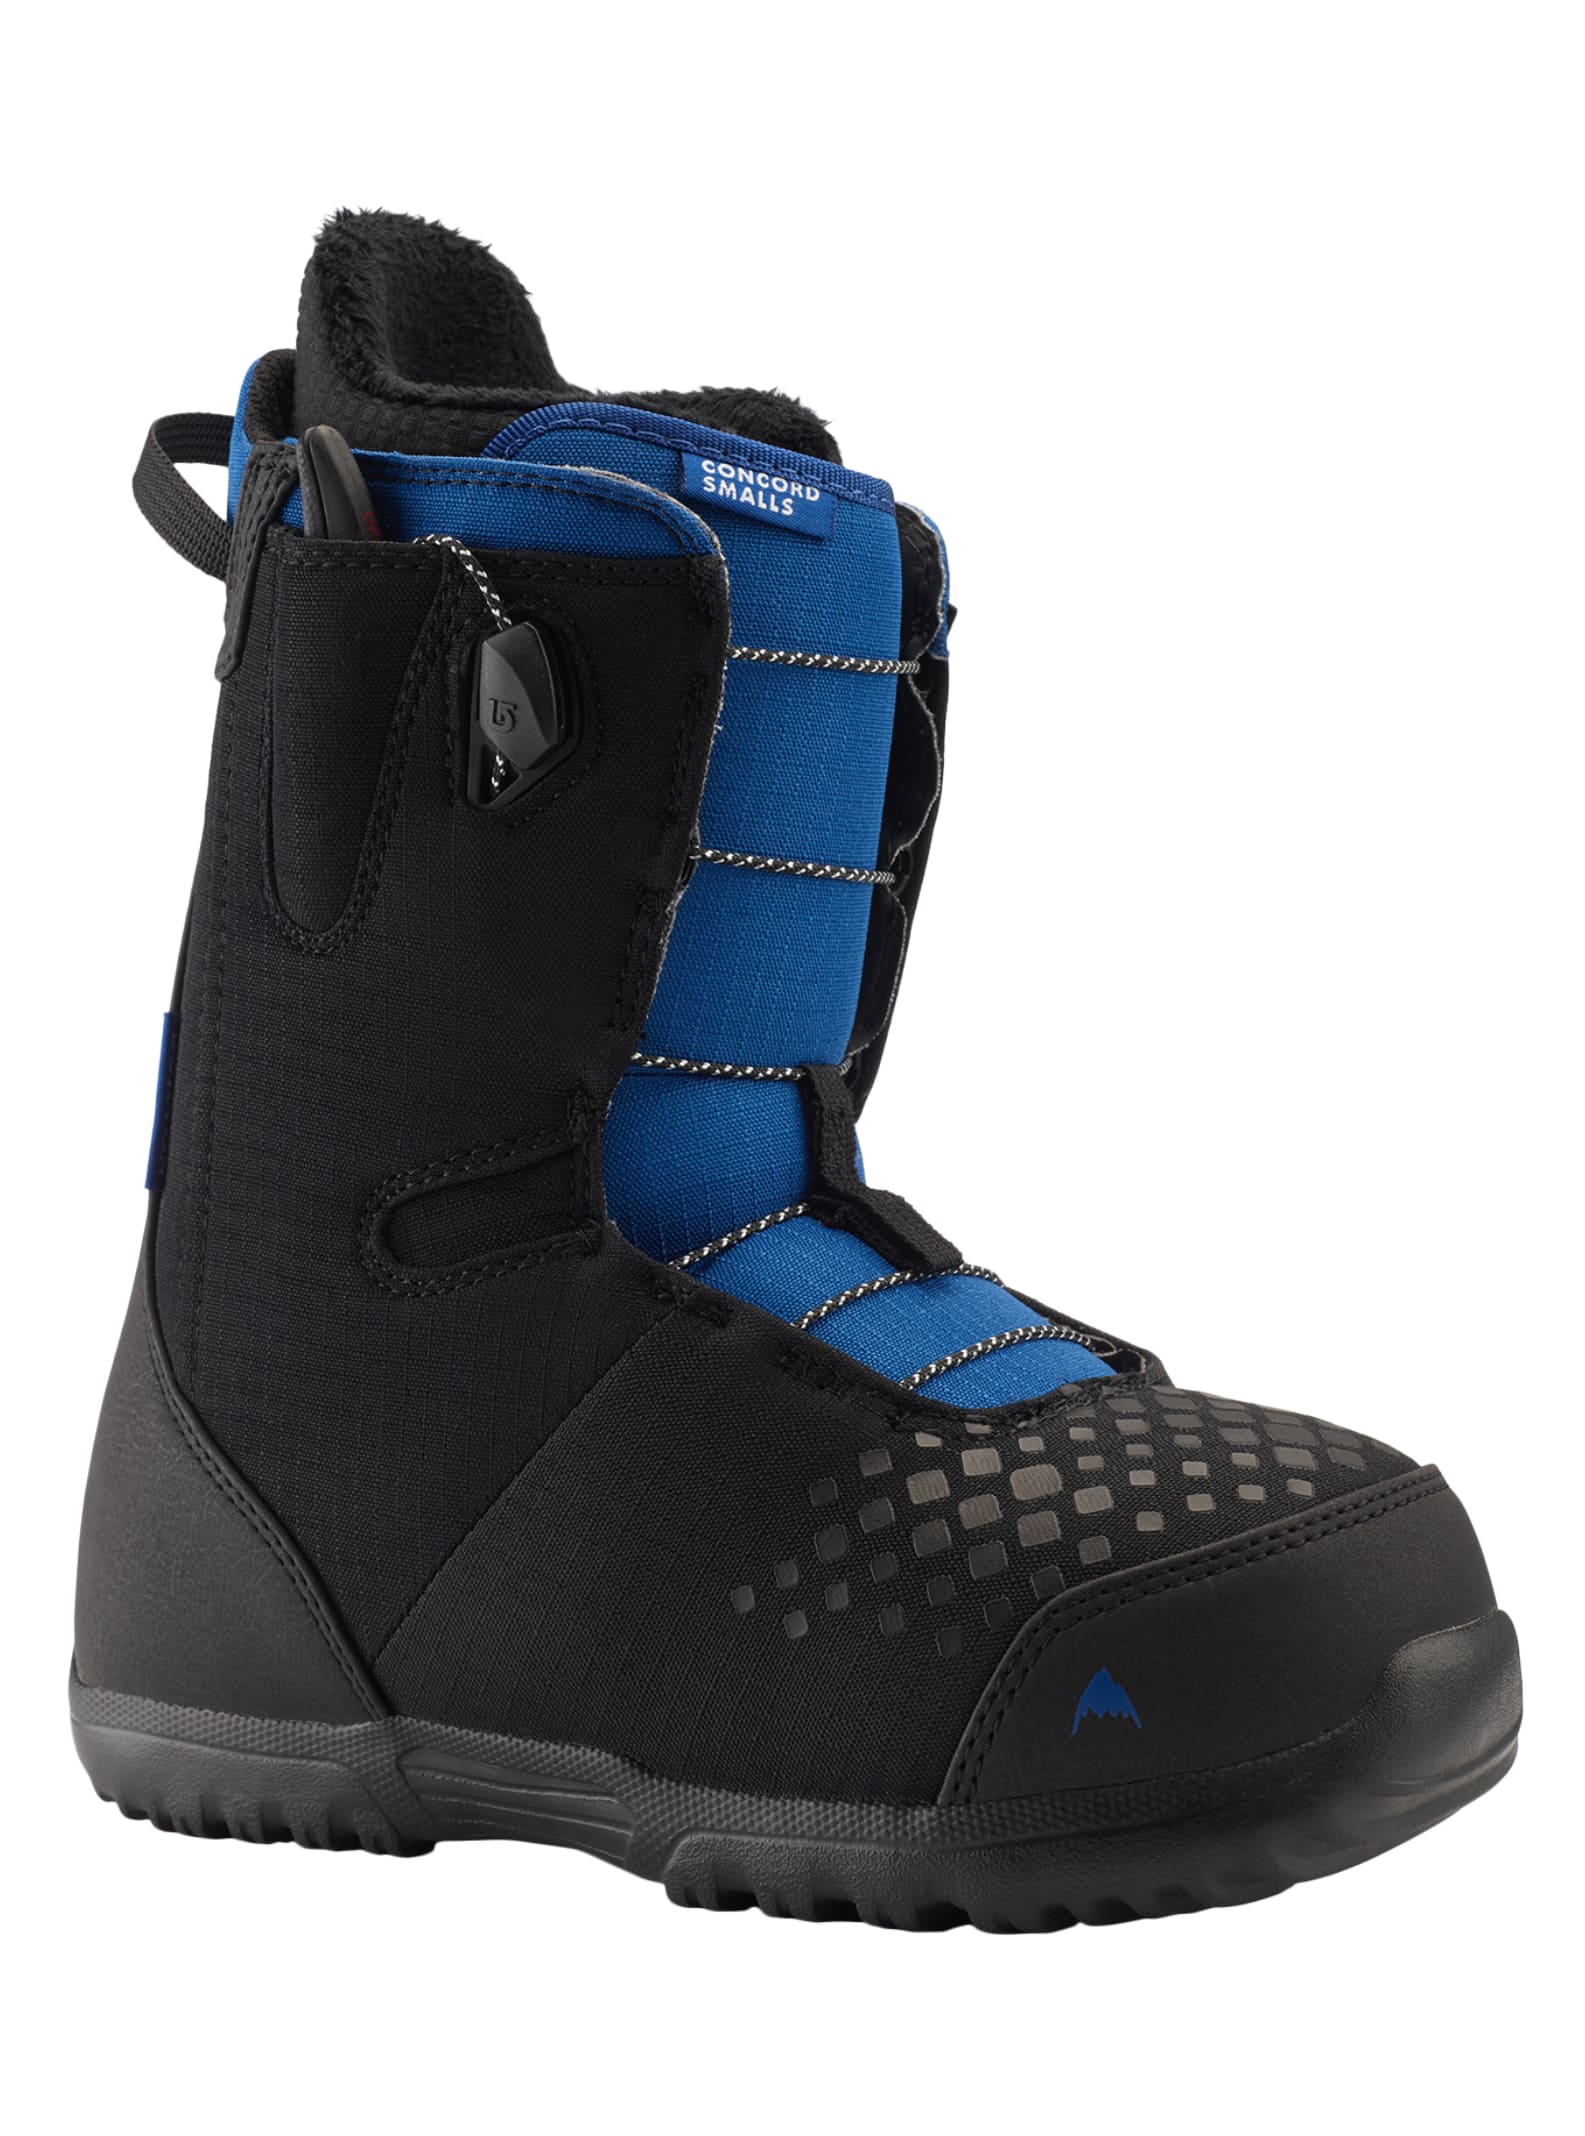 Kids' Burton Concord Smalls Snowboard Boots